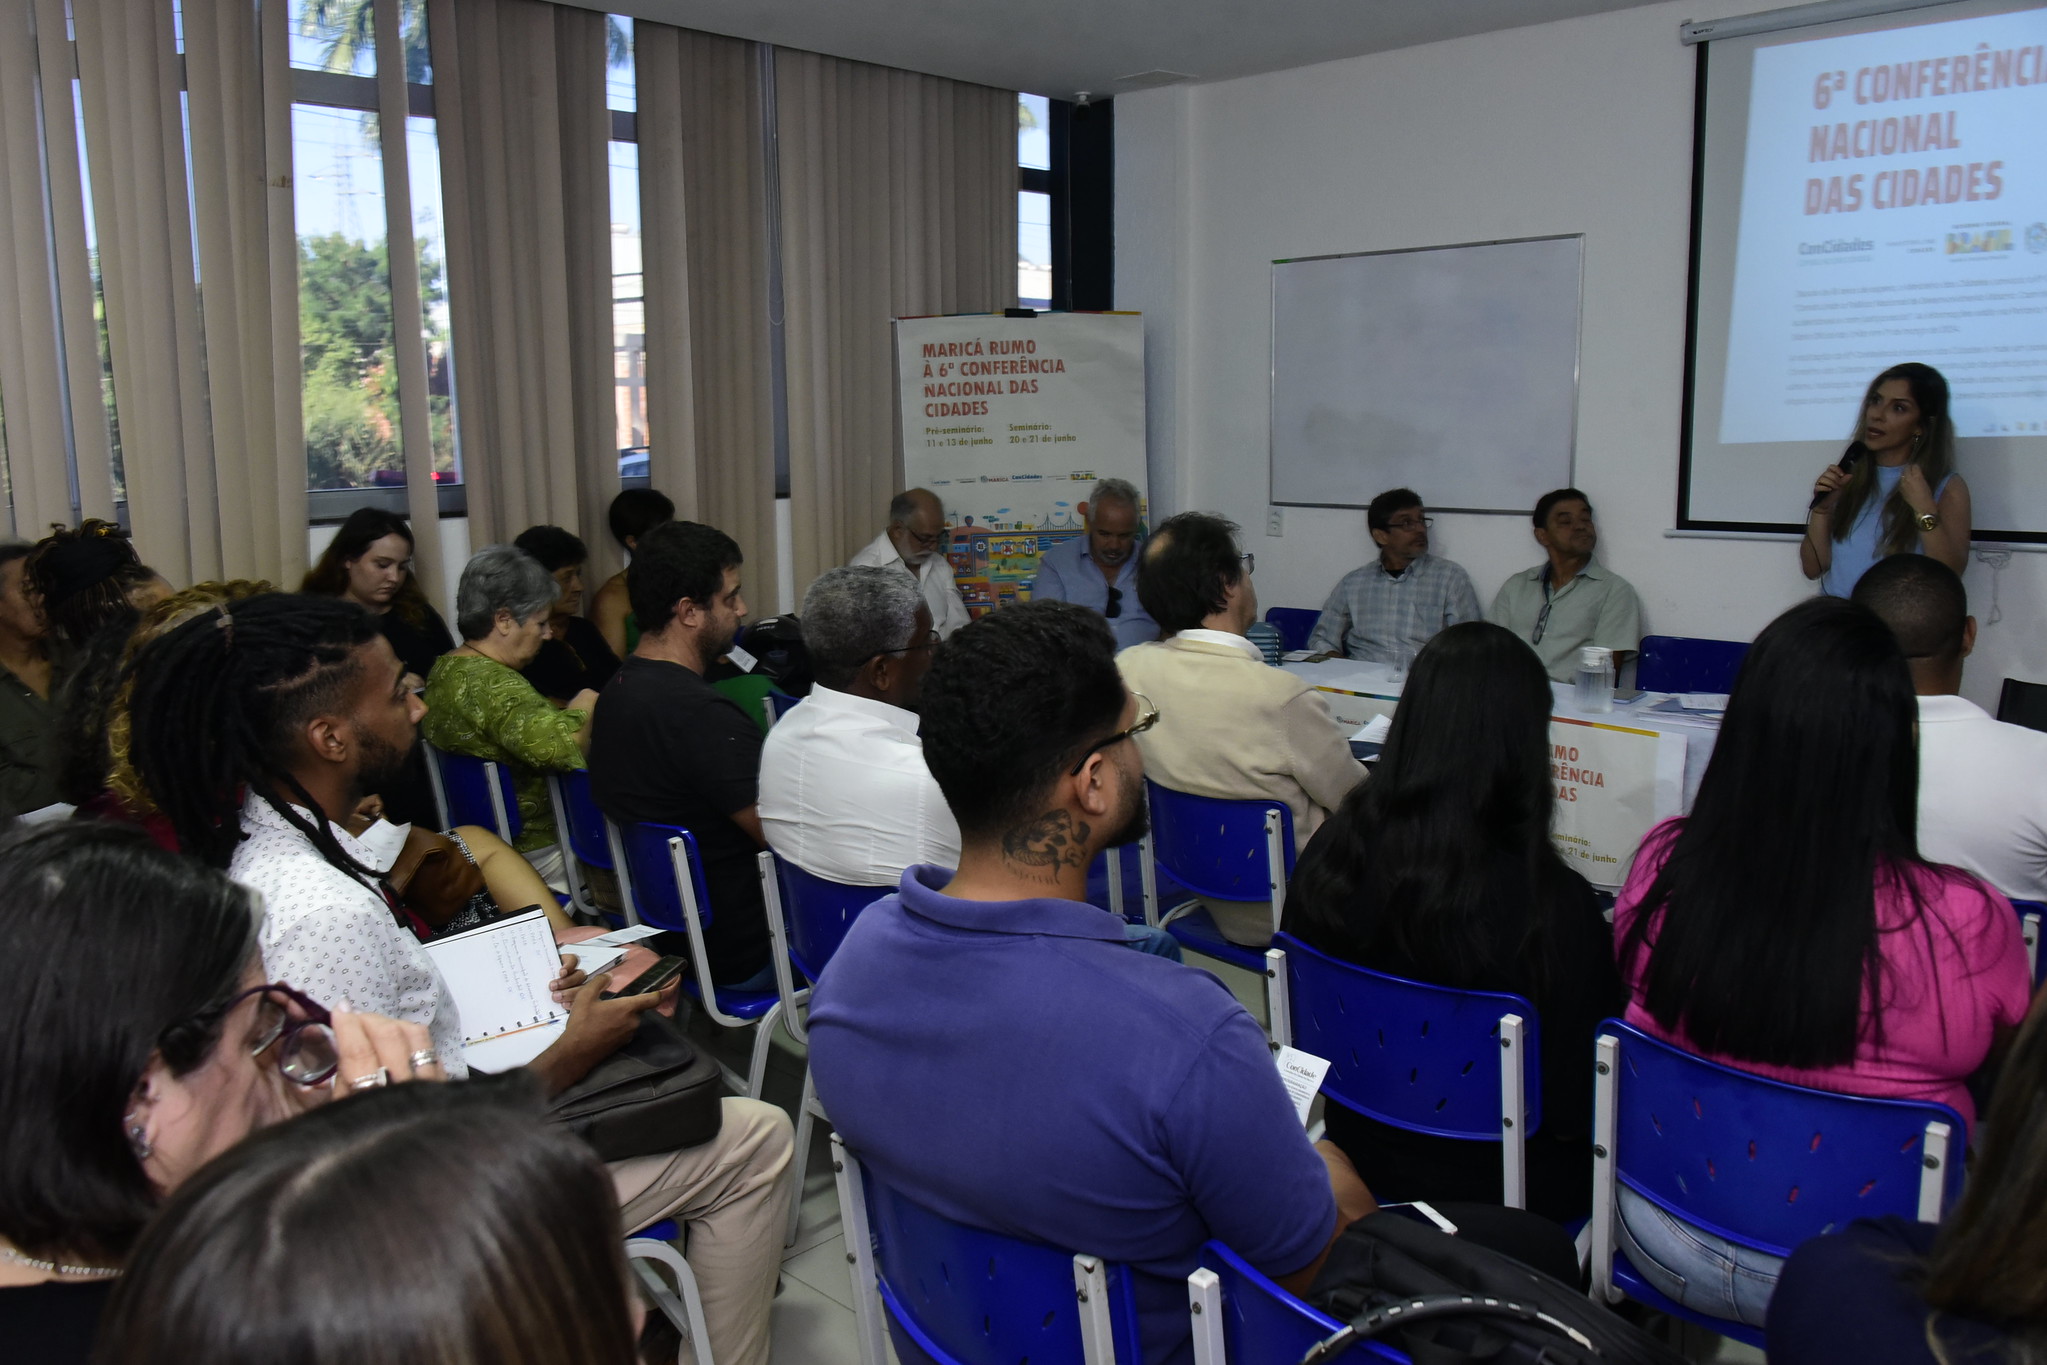 Maricá: Moradores indicam ideias para a 6ª Conferência Nacional das Cidades